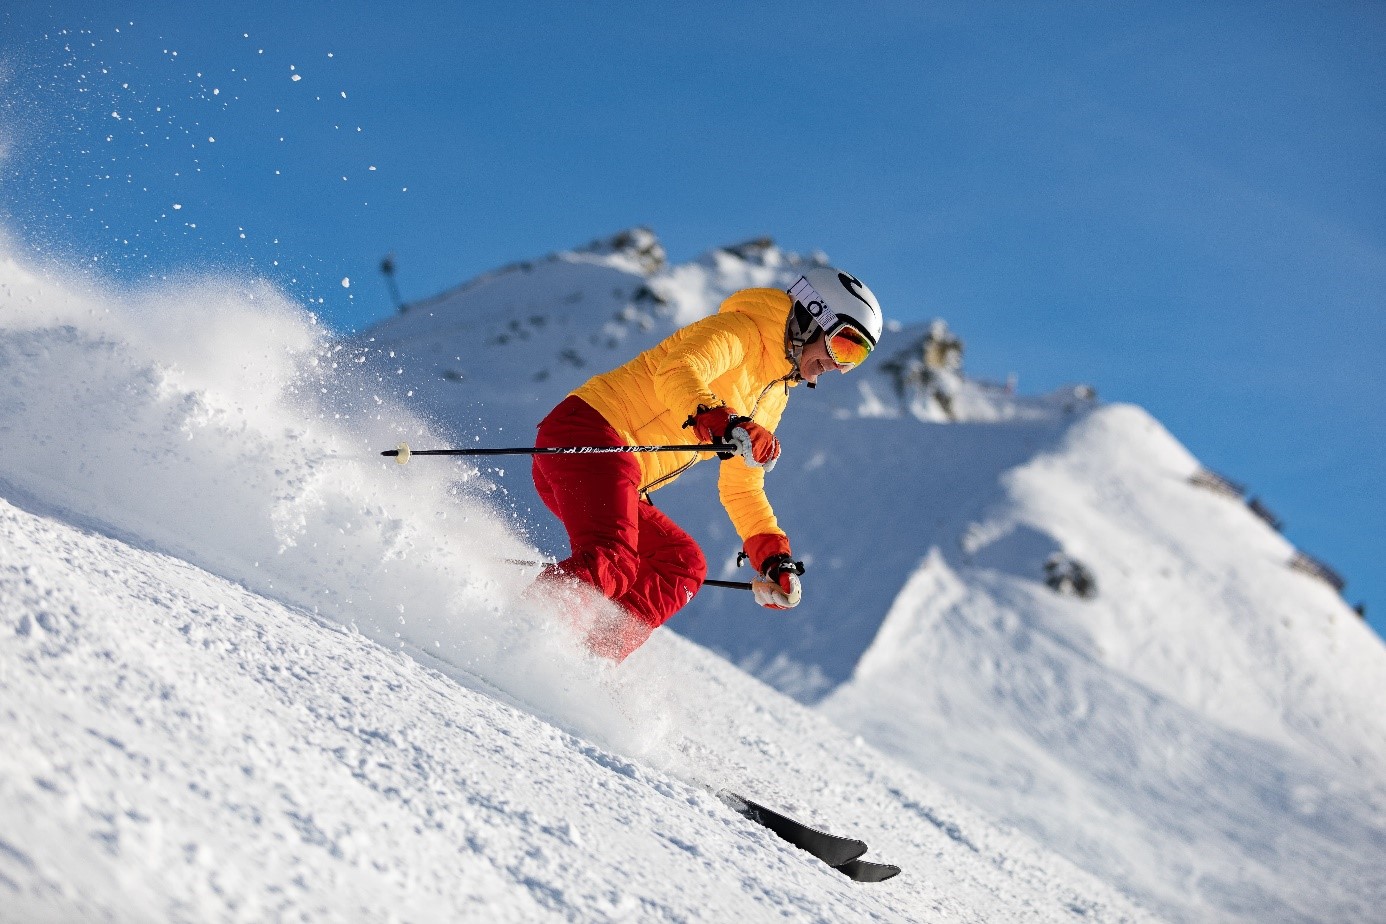 Un skieur en tenue rouge et jaune dévale une piste en laissant une trainée de neige